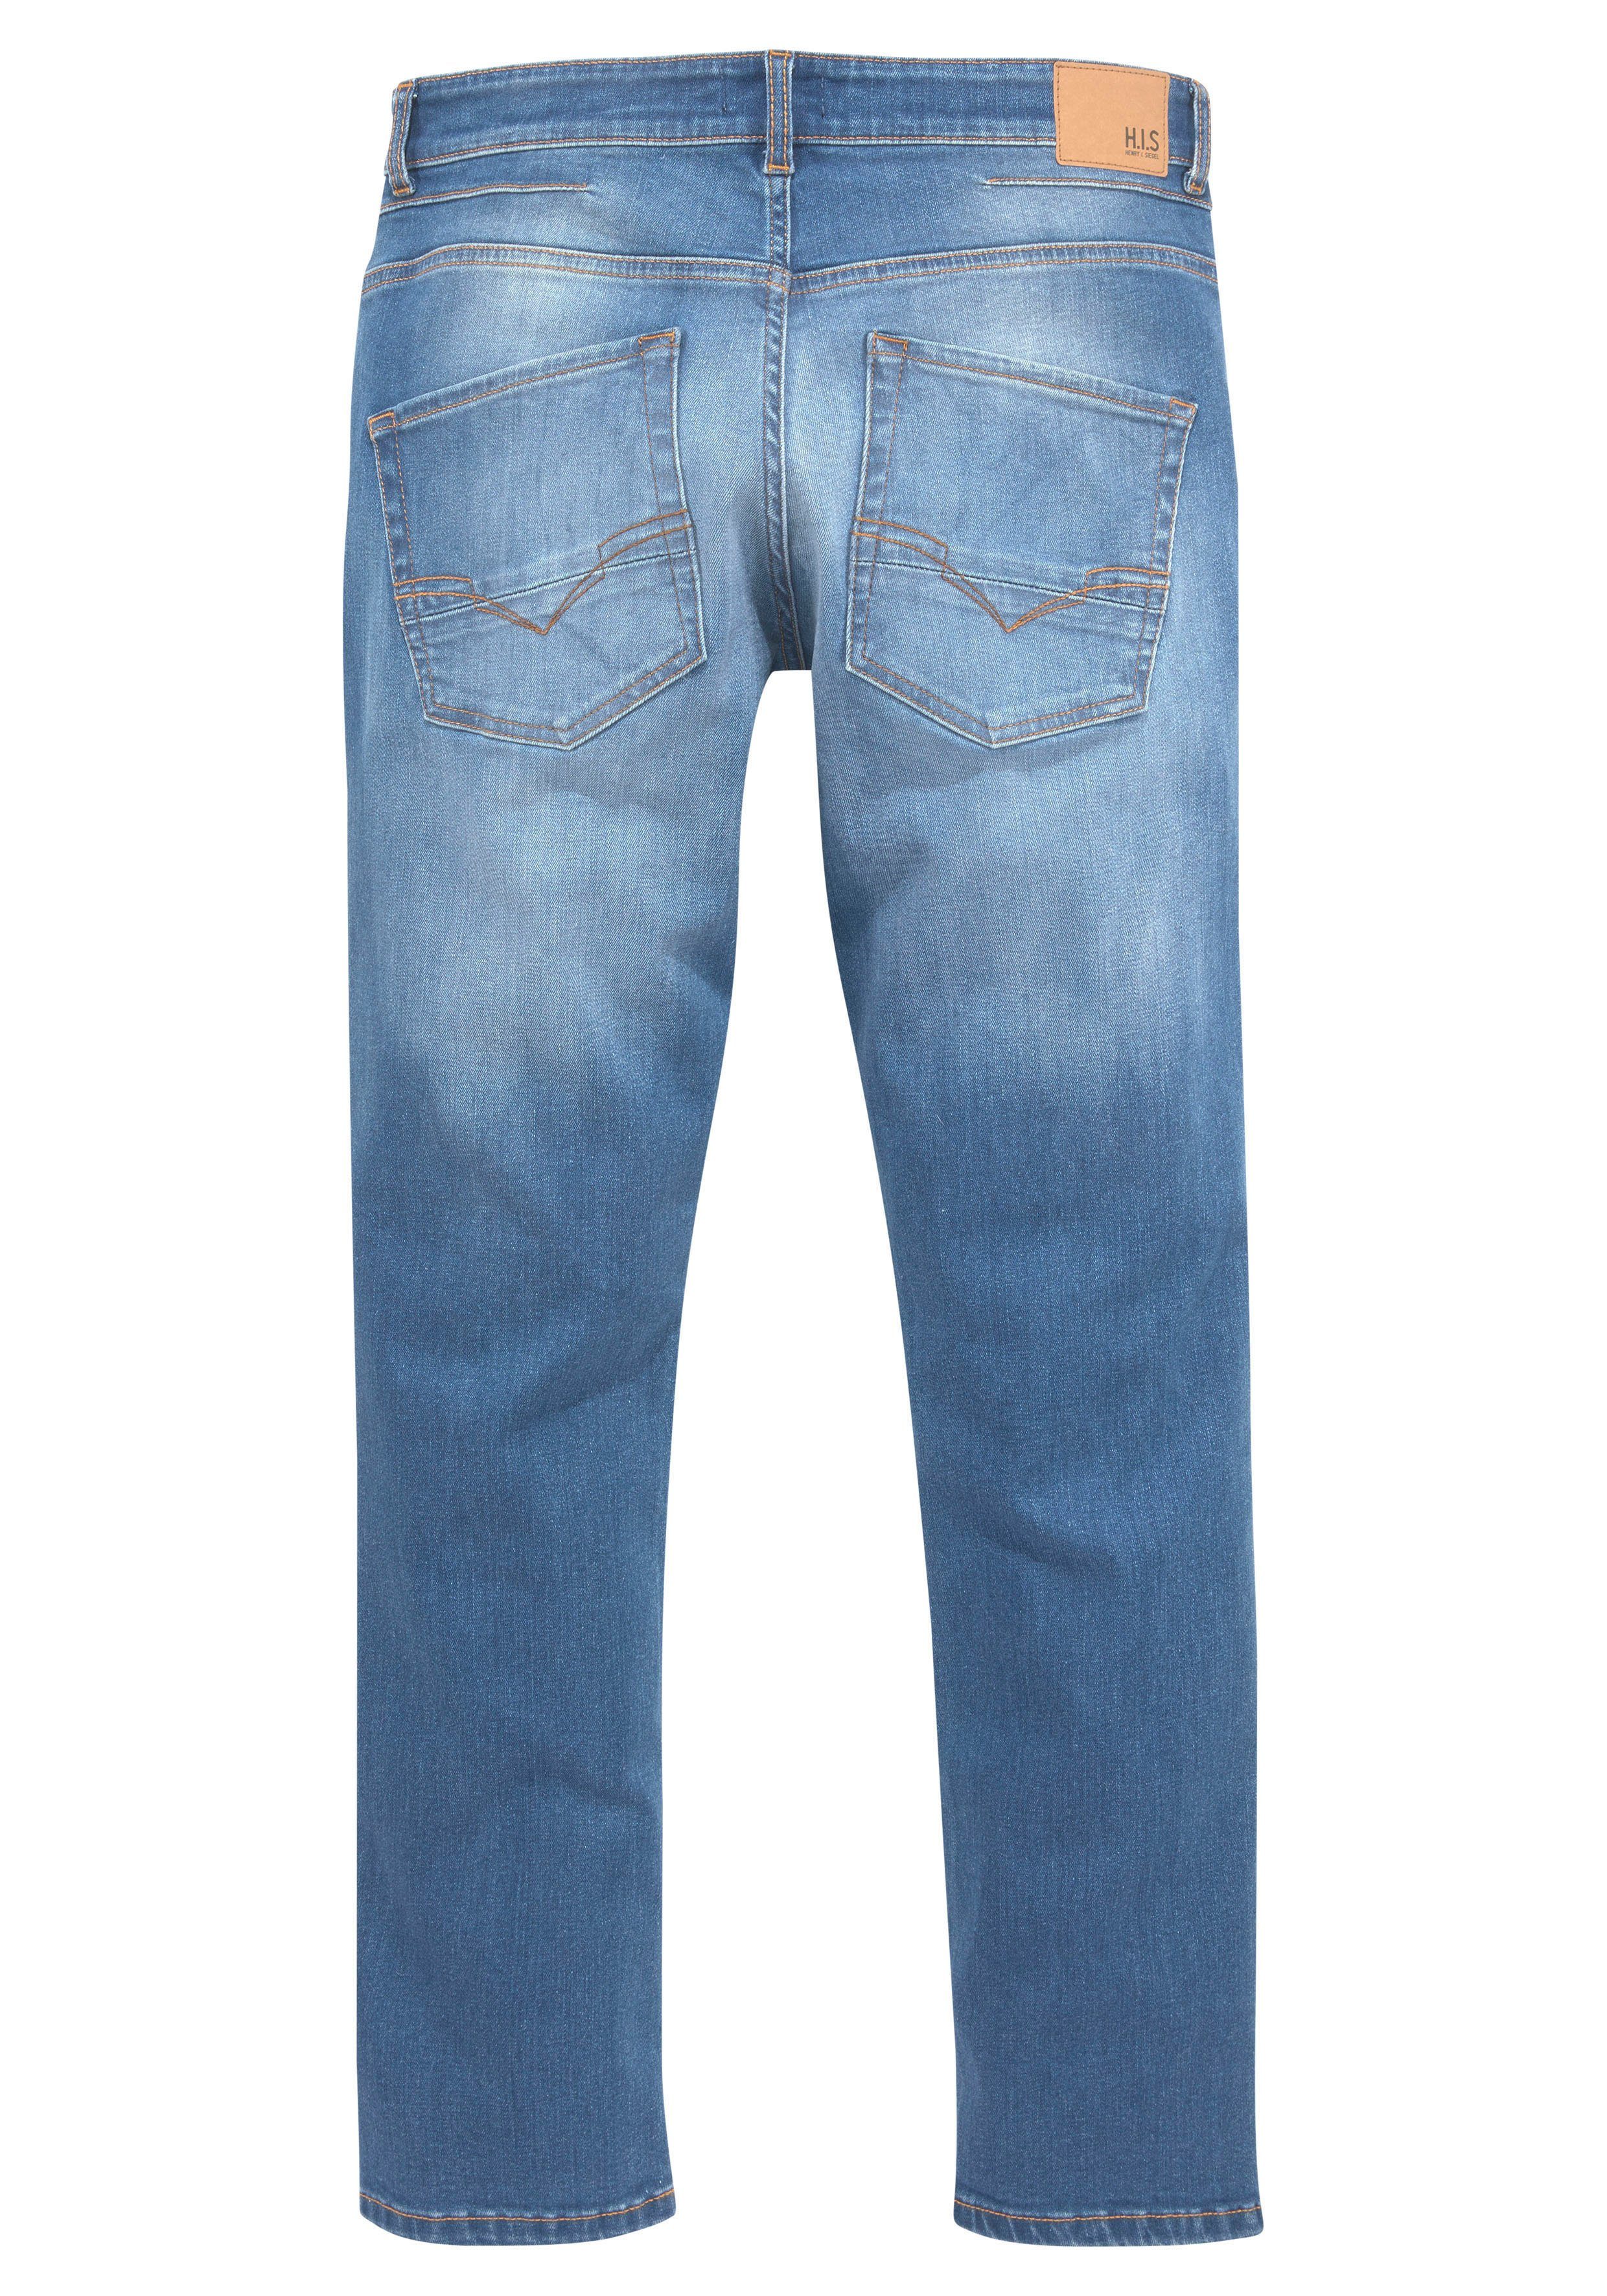 durch blue Wash Straight-Jeans Ozon wassersparende DALE H.I.S Ökologische, Produktion